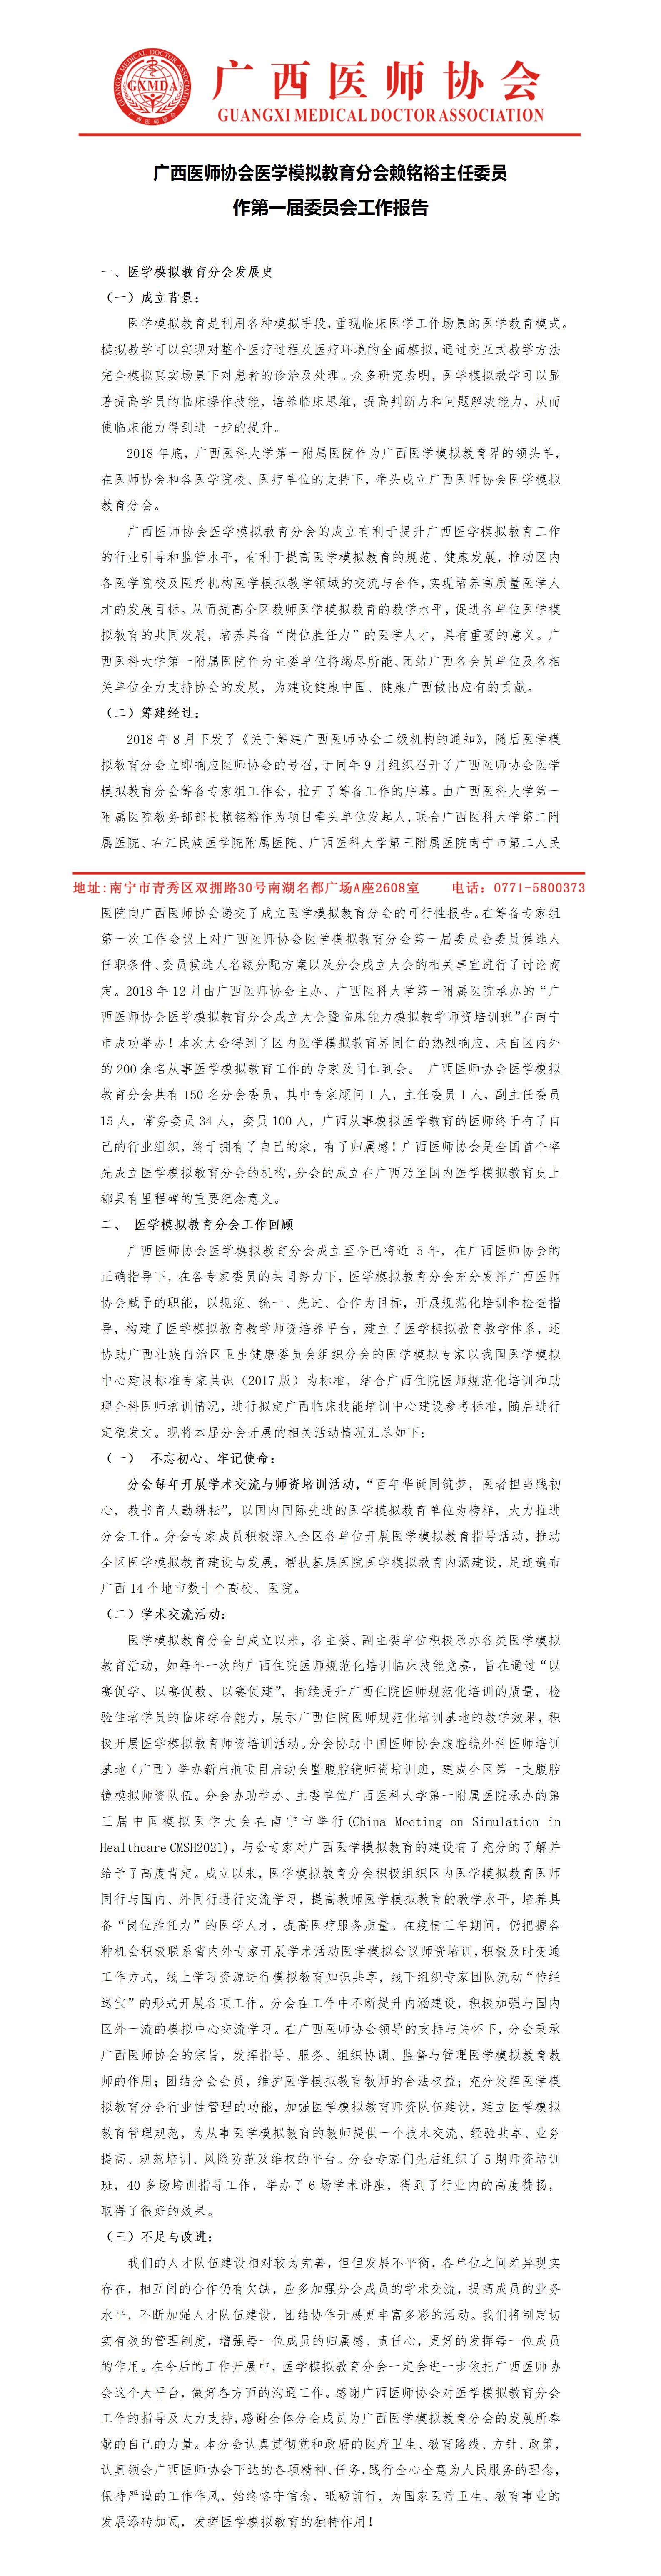 广西医师协会医学模拟教育分会工作报告2023.6.12_01.jpg